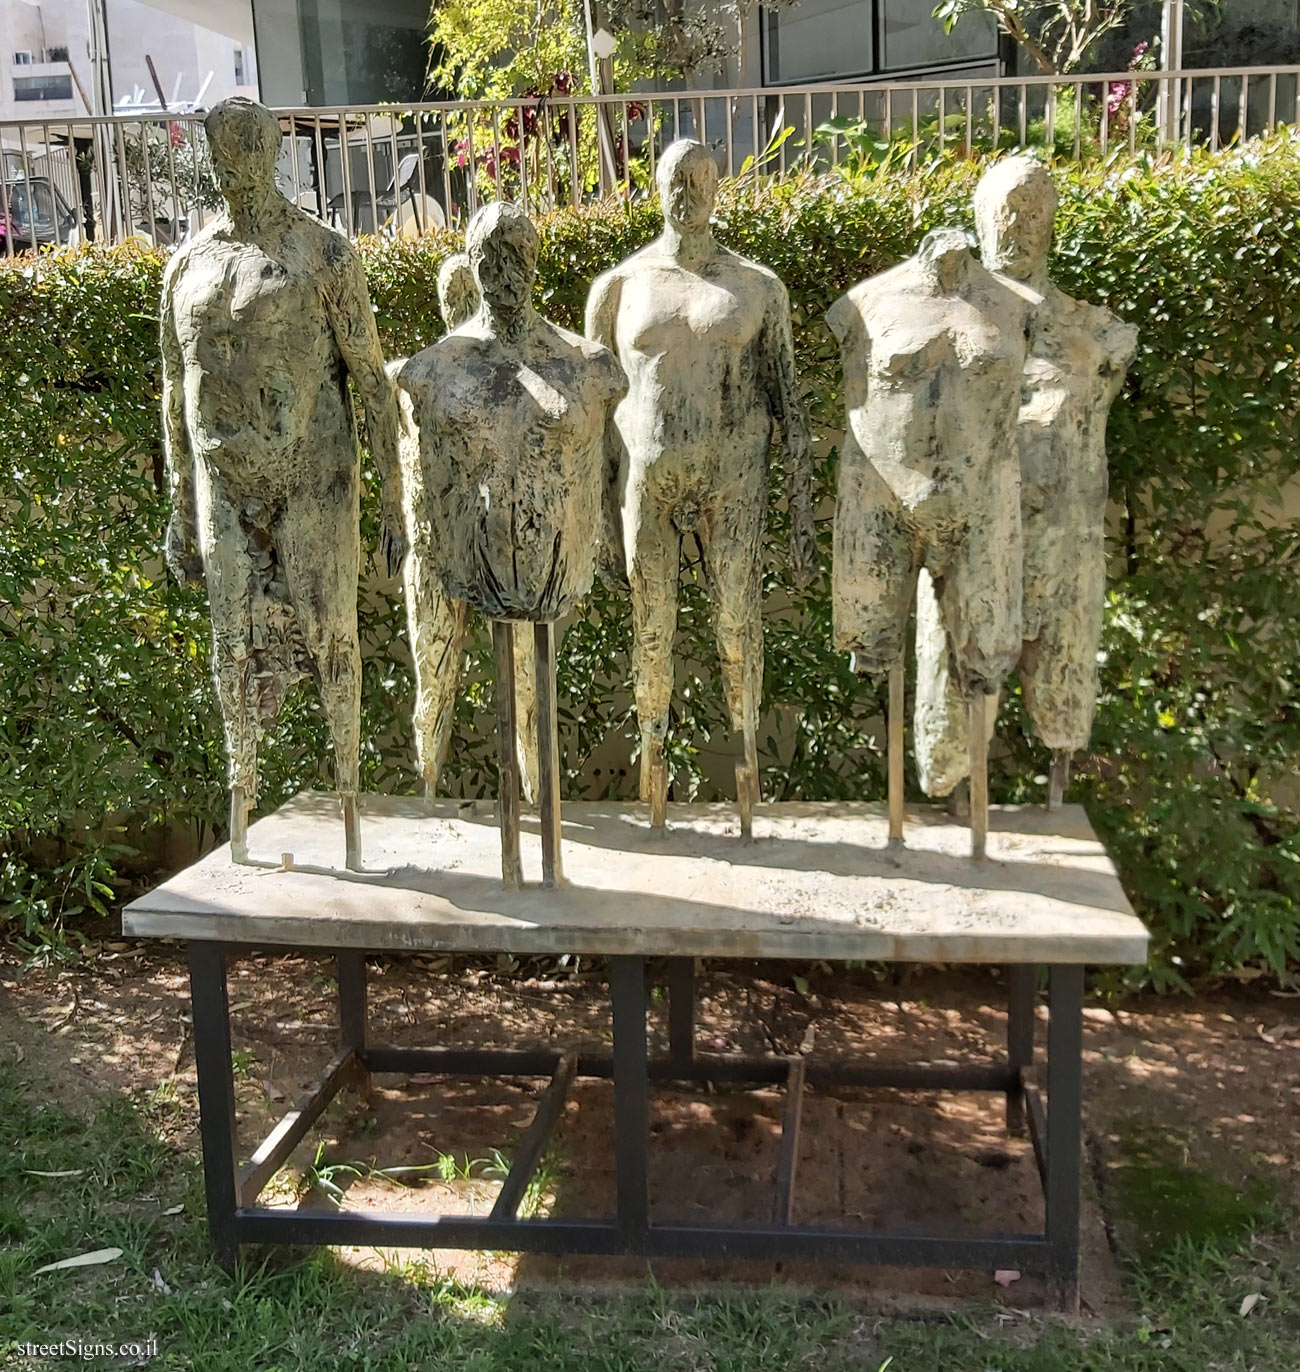 Tel Aviv - Lola Beer Ebner Sculpture Garden - "The Atelier" - Ofer Lallouche - Tel Aviv Museum